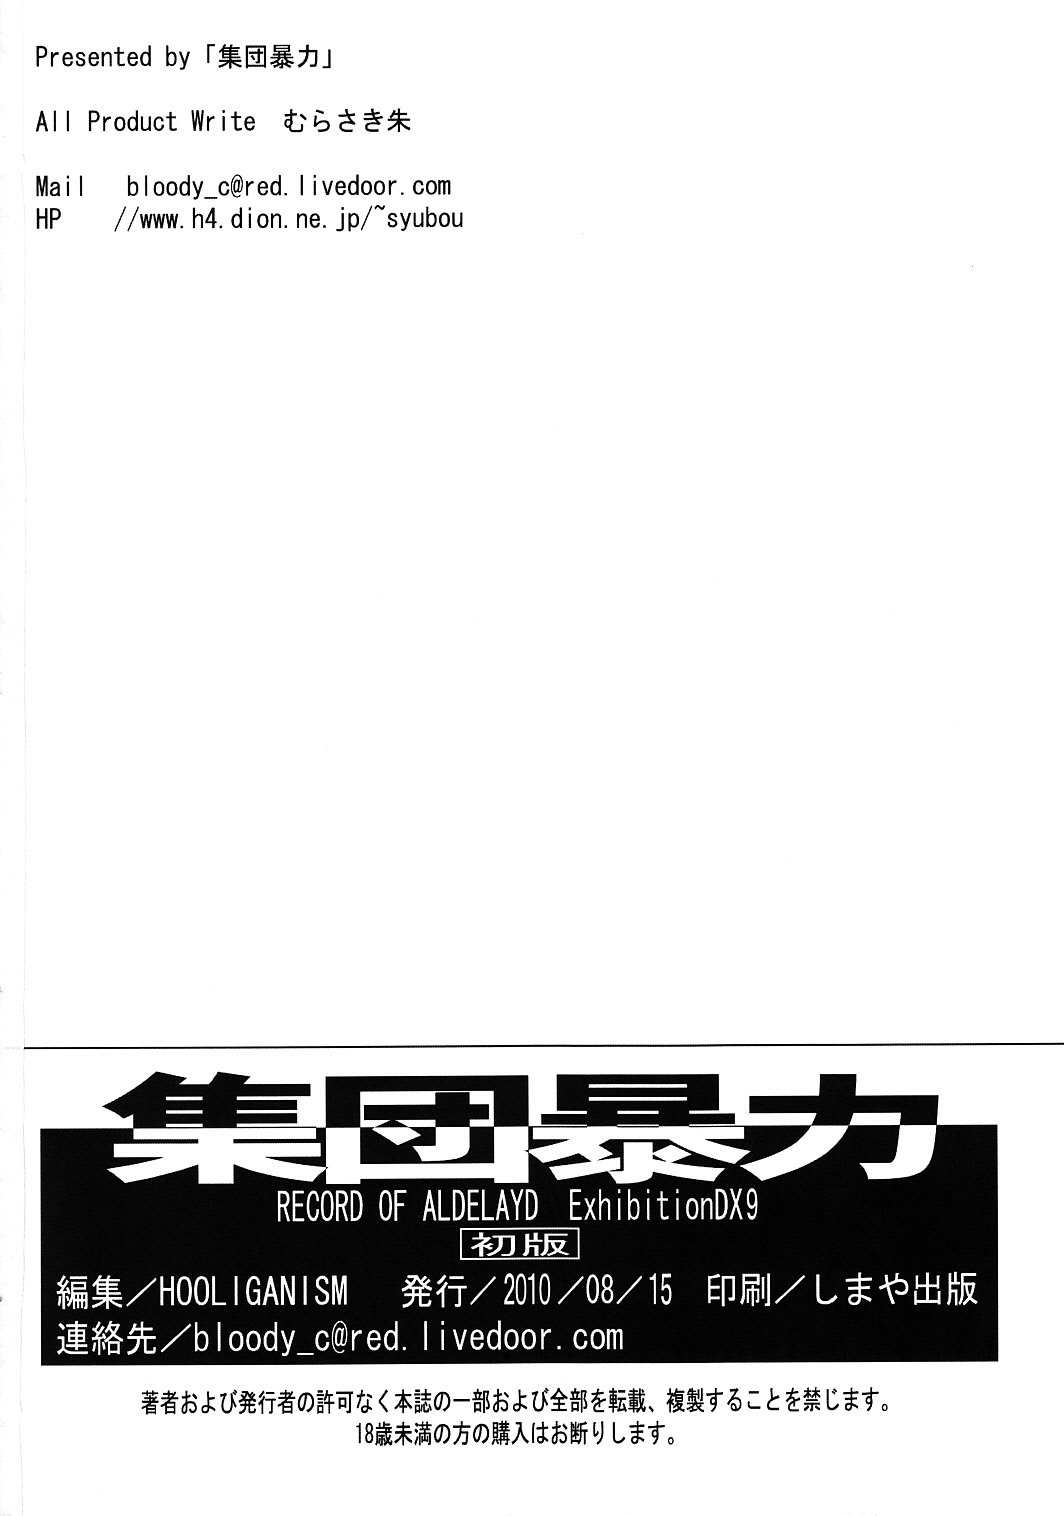 (C78) [Shuudan Bouryoku (Murasaki Shu)] Hooliganism 17 Record of ALDELAYD Act.12 Exhibition DX9 (C78) [集団暴力(むらさき朱)] 集団暴力17 Record of ALDELAYD Act.12 Exhibition DX9